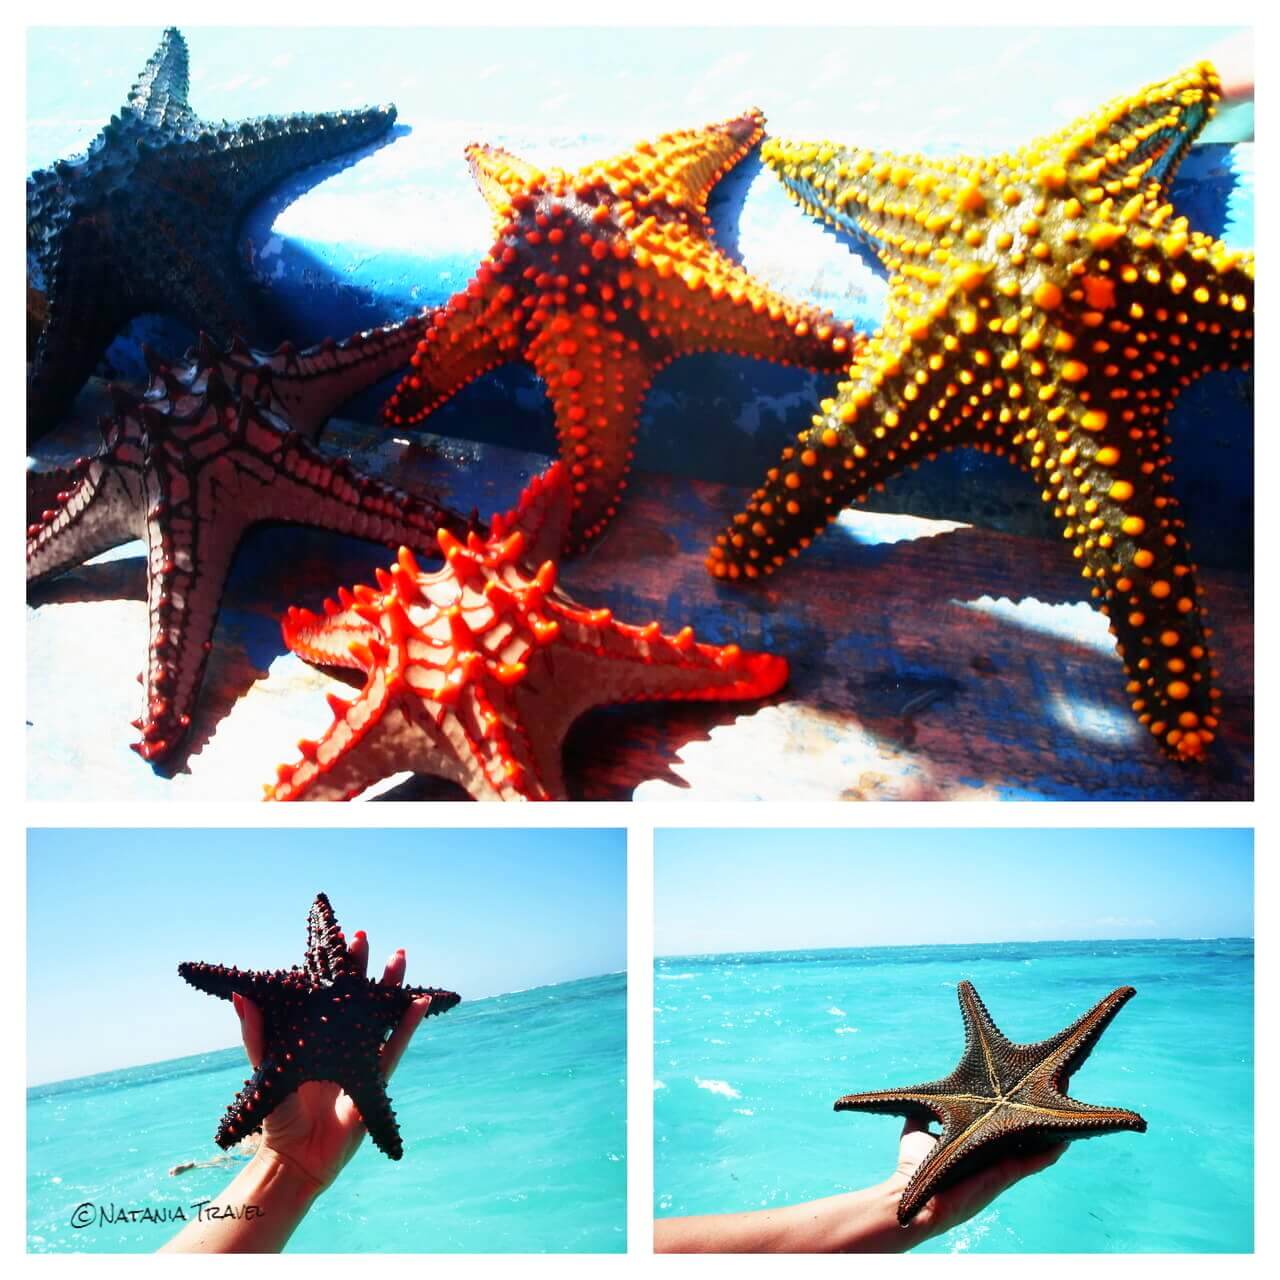 Zanzibar's sea stars